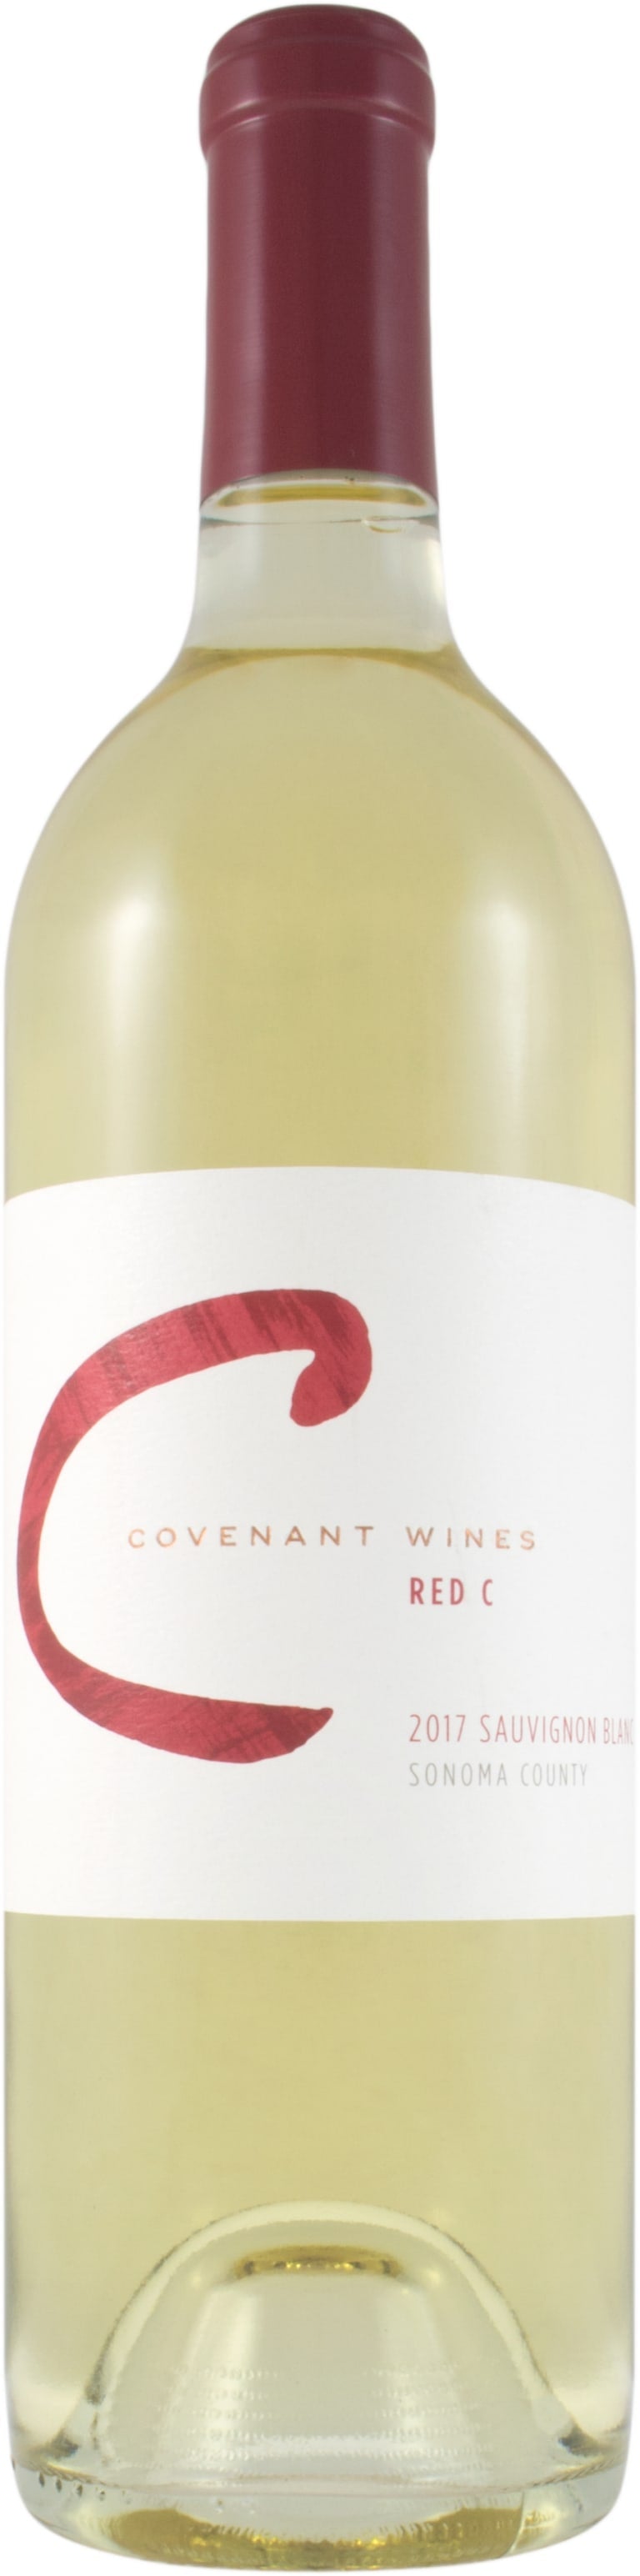 Covenant Sauvignon Blanc Red C 2017